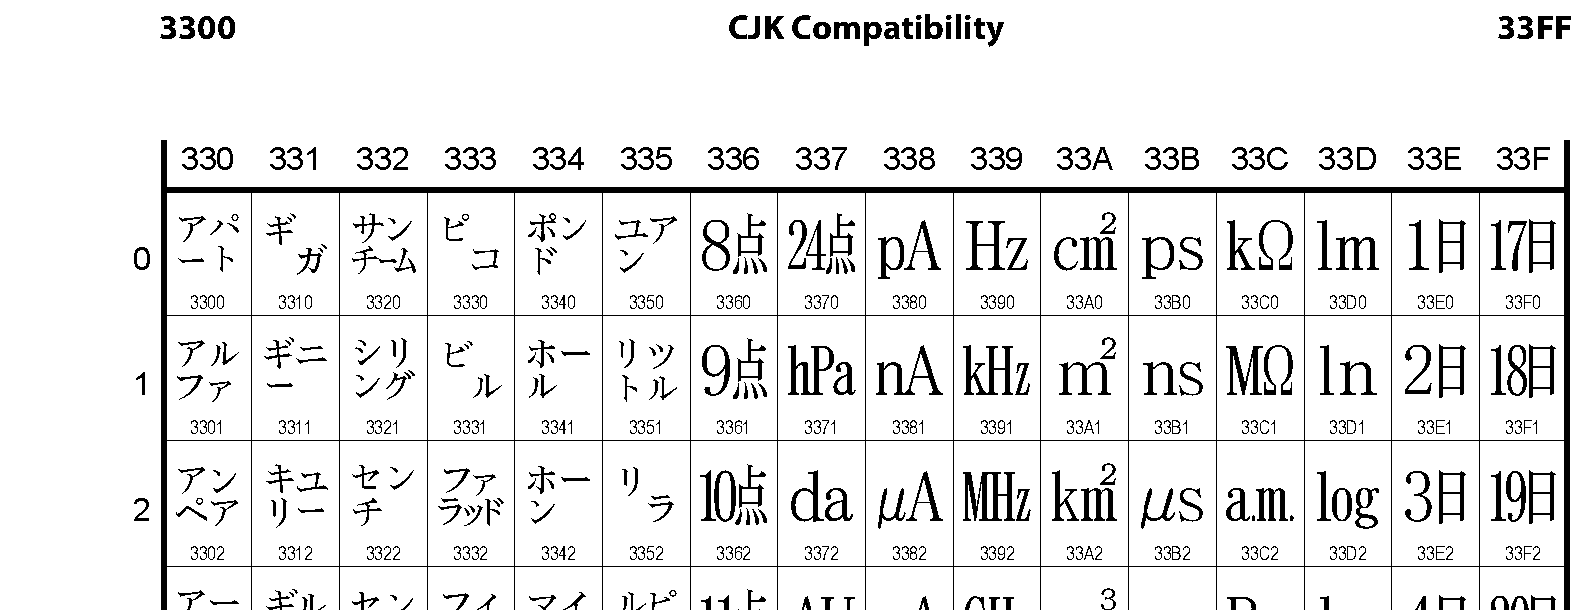 Unicode - CJK Compatibility